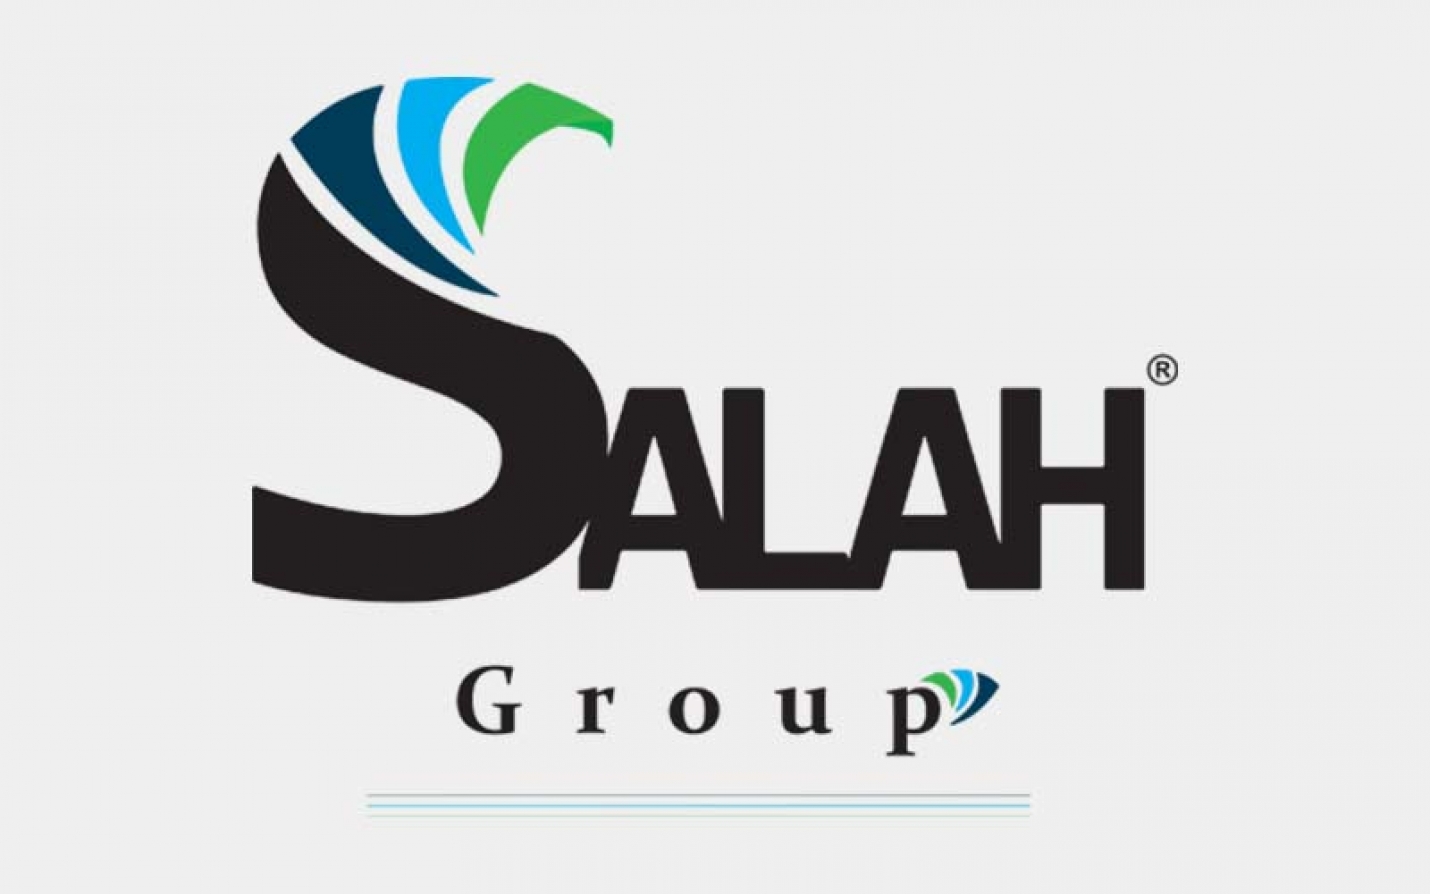 Le Groupe Salah voit grand et joue la carte de la diversification